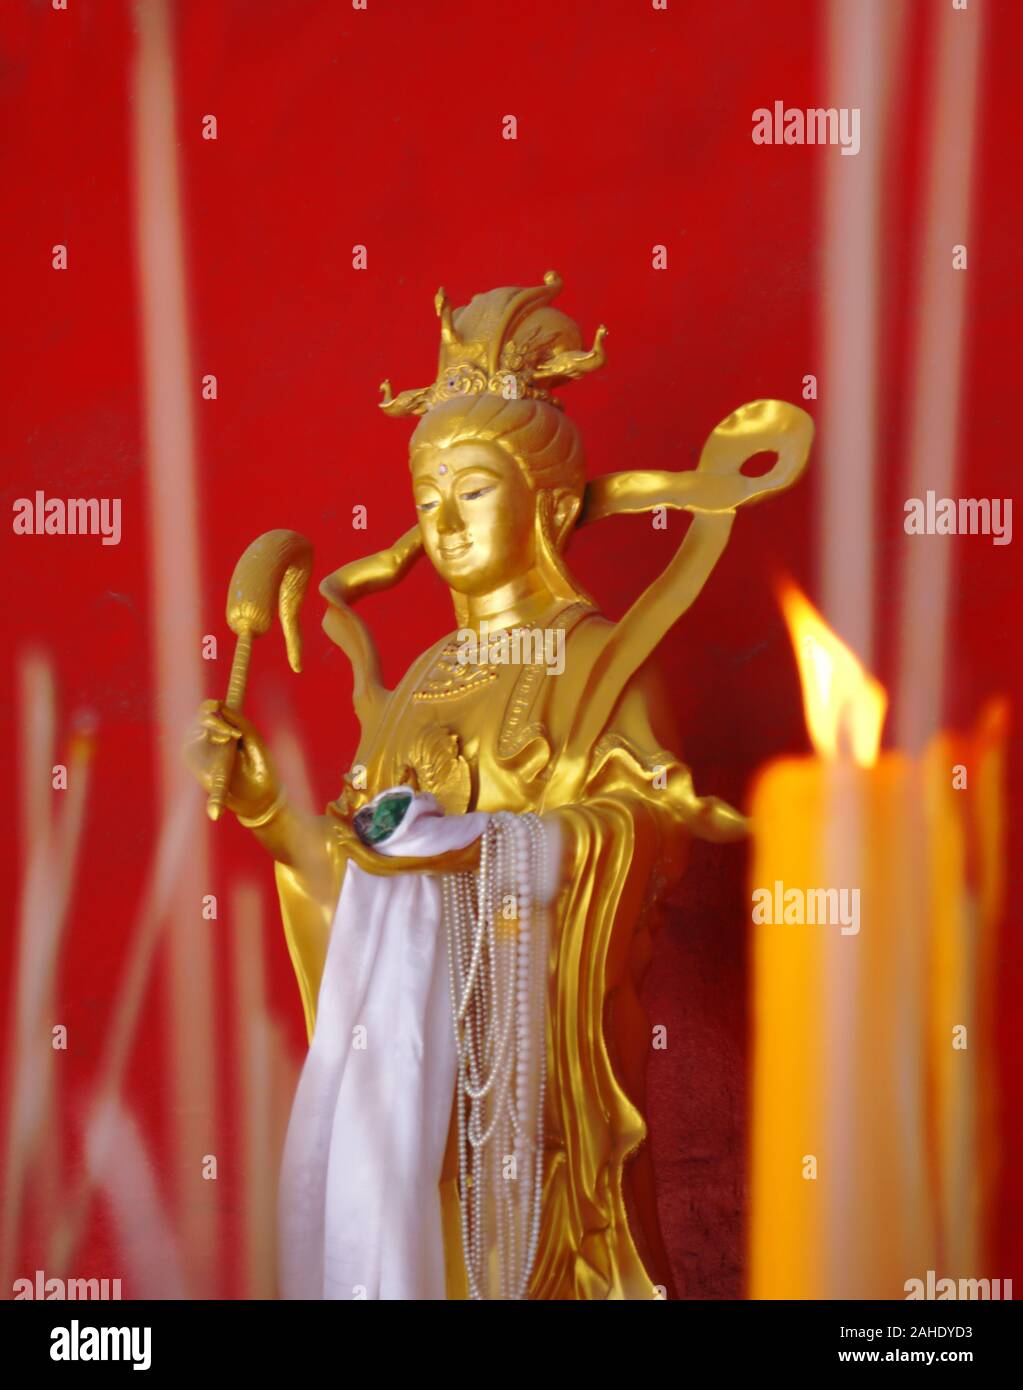 Statua dorata di una dea buddista contro la parete rossa. Le candele e i bastoncini di incenso in primo piano. Foto Stock